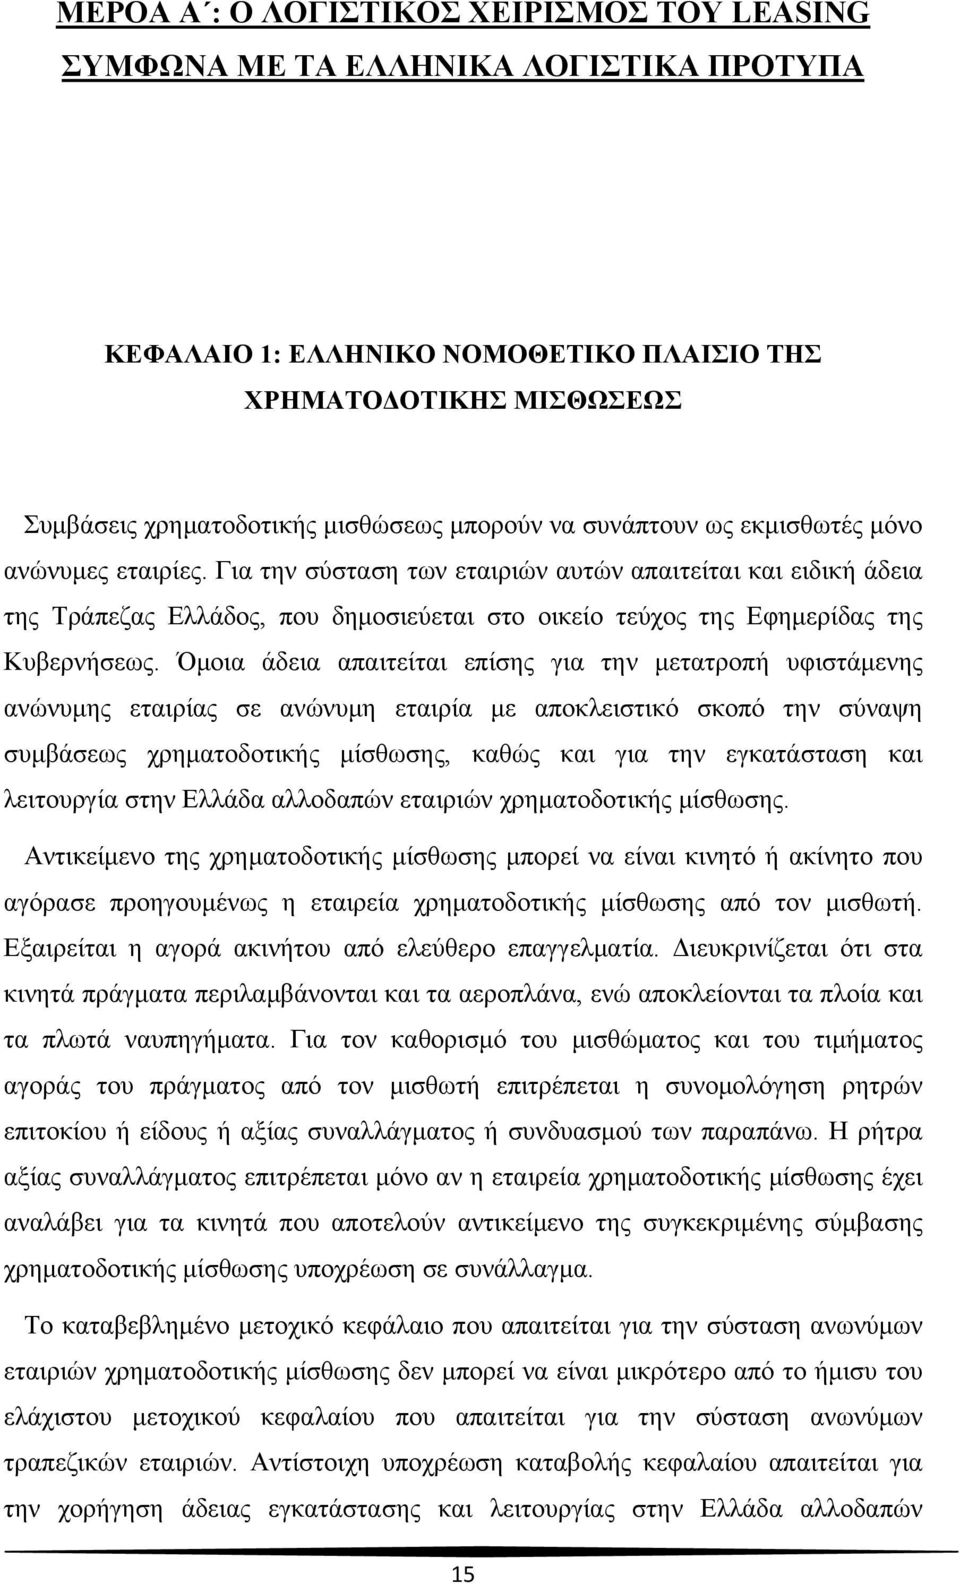 Για την σύσταση των εταιριών αυτών απαιτείται και ειδική άδεια της Τράπεζας Ελλάδος, που δημοσιεύεται στο οικείο τεύχος της Εφημερίδας της Κυβερνήσεως.